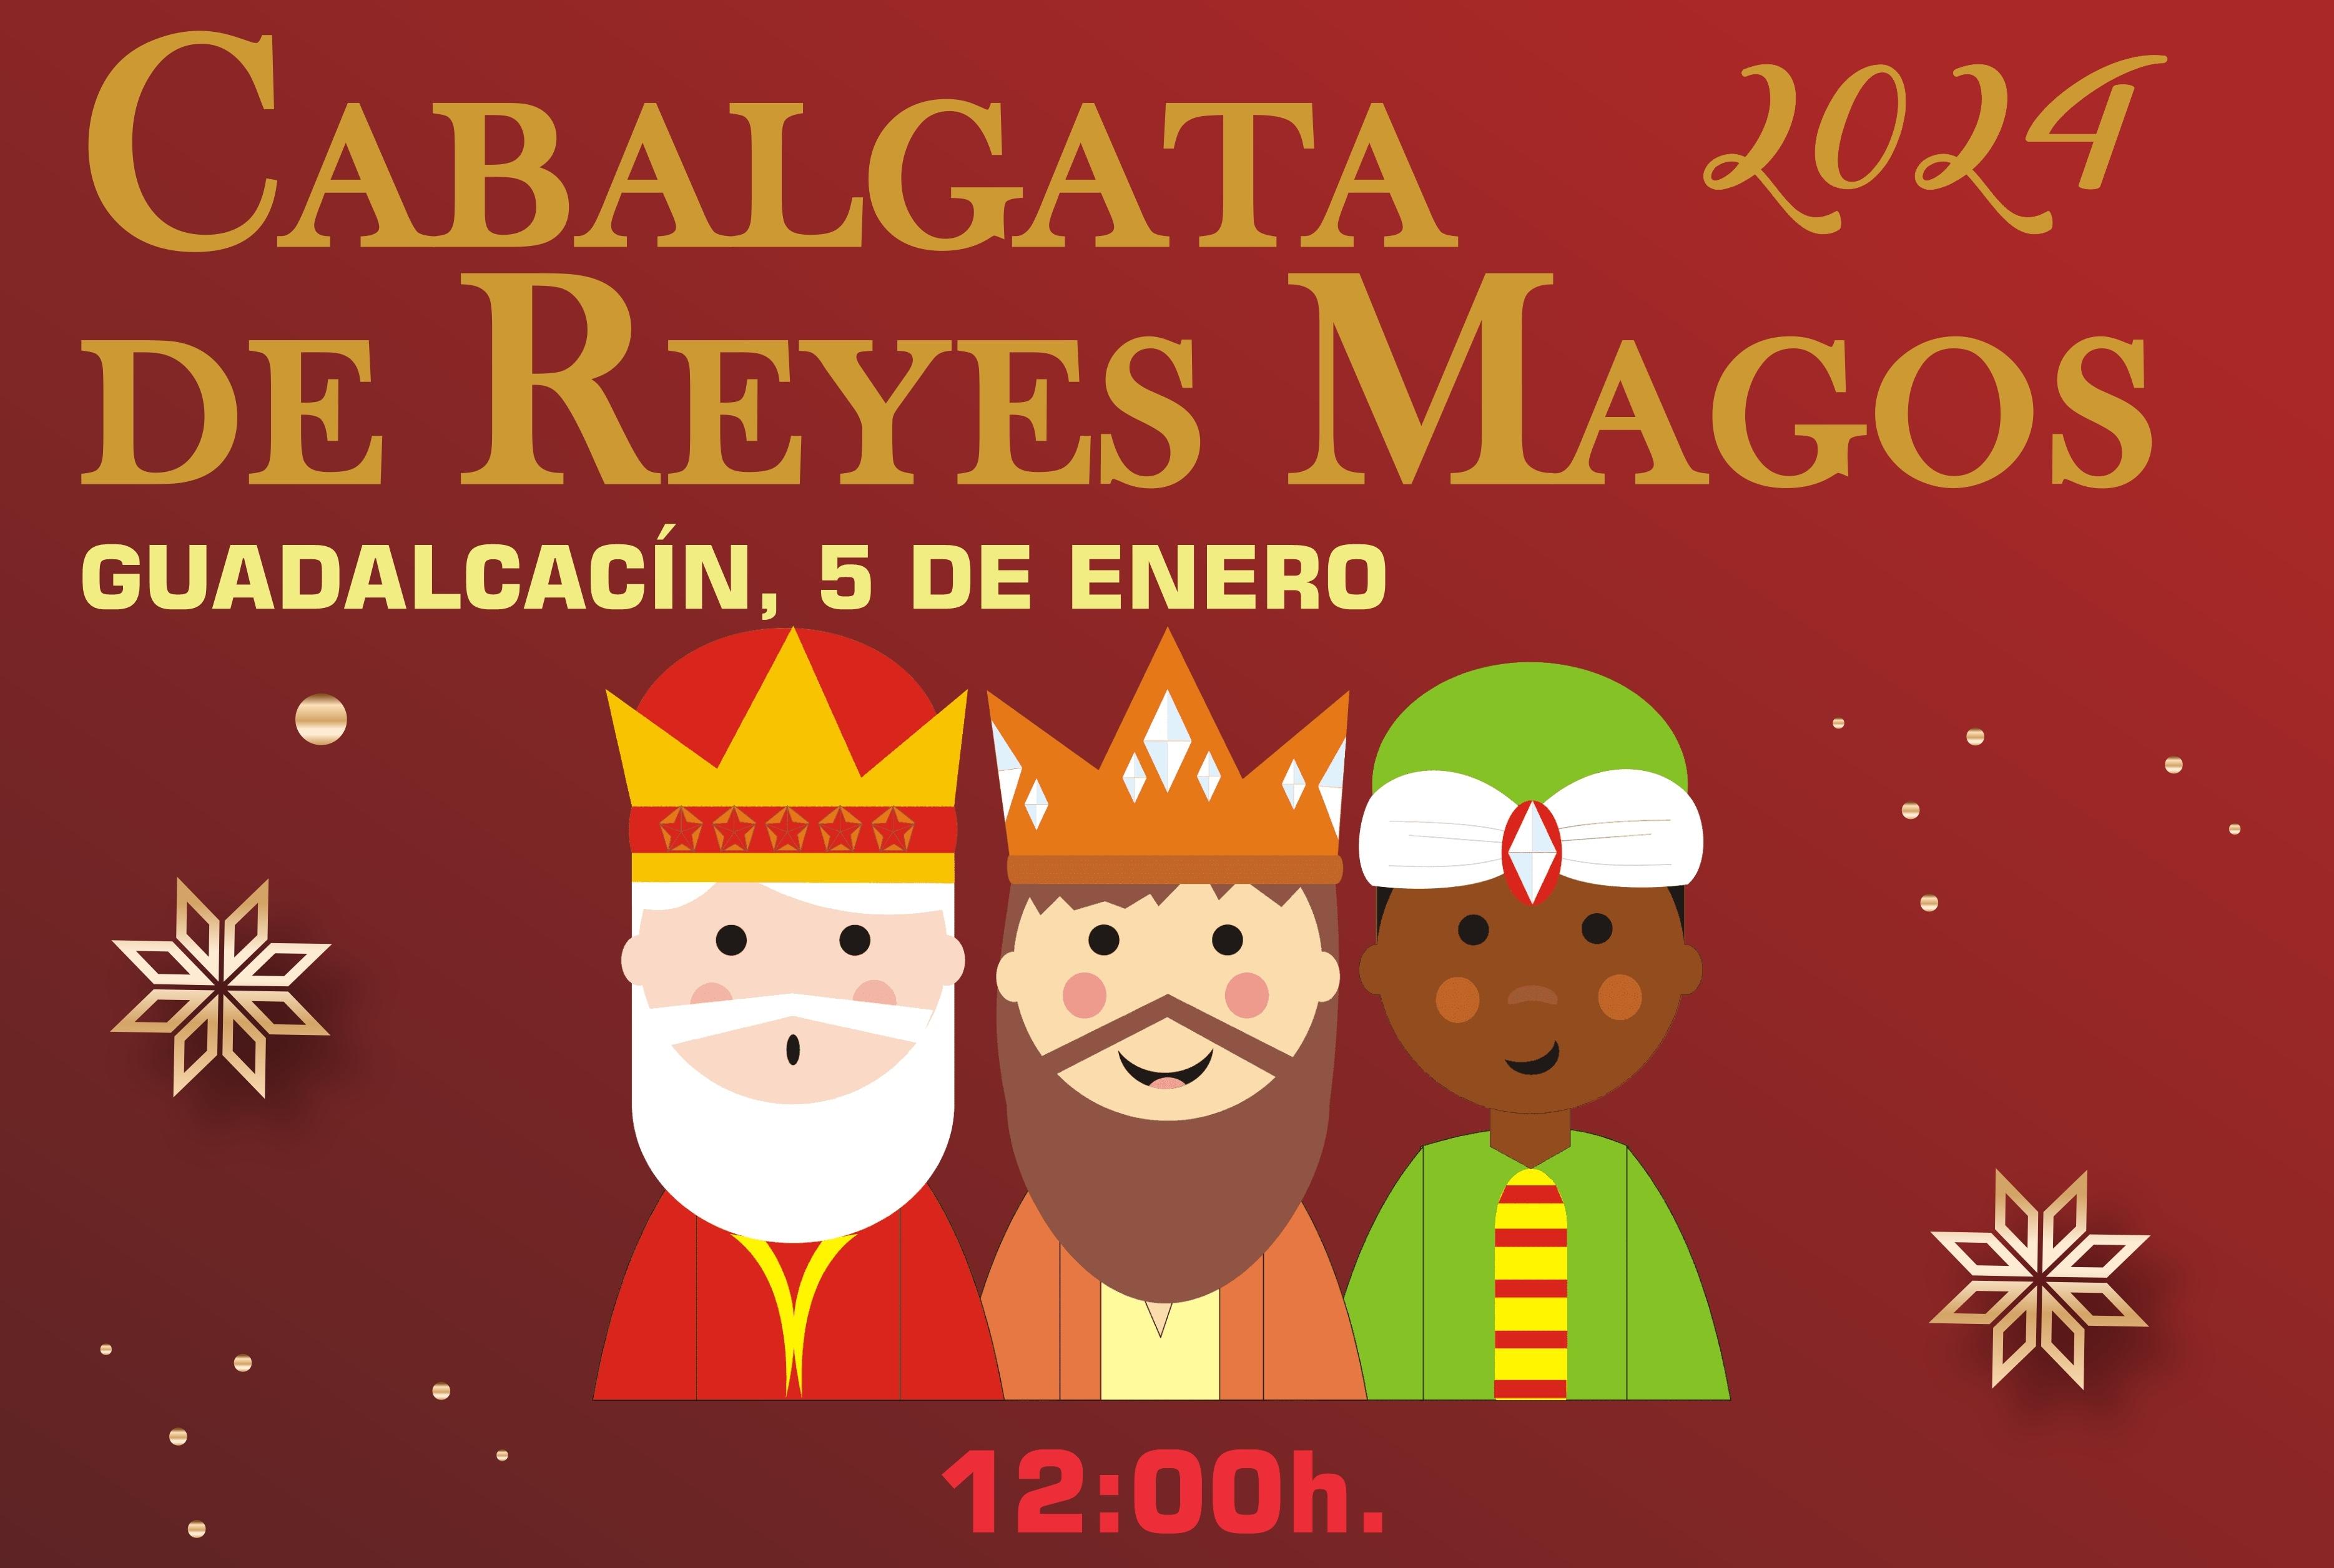 Más de 3.500 kilos de caramelos, 2.000 conos de chuches y más de 600 bolsas de juguetes: así será la Cabalgata de Reyes Magos de Guadalcacín